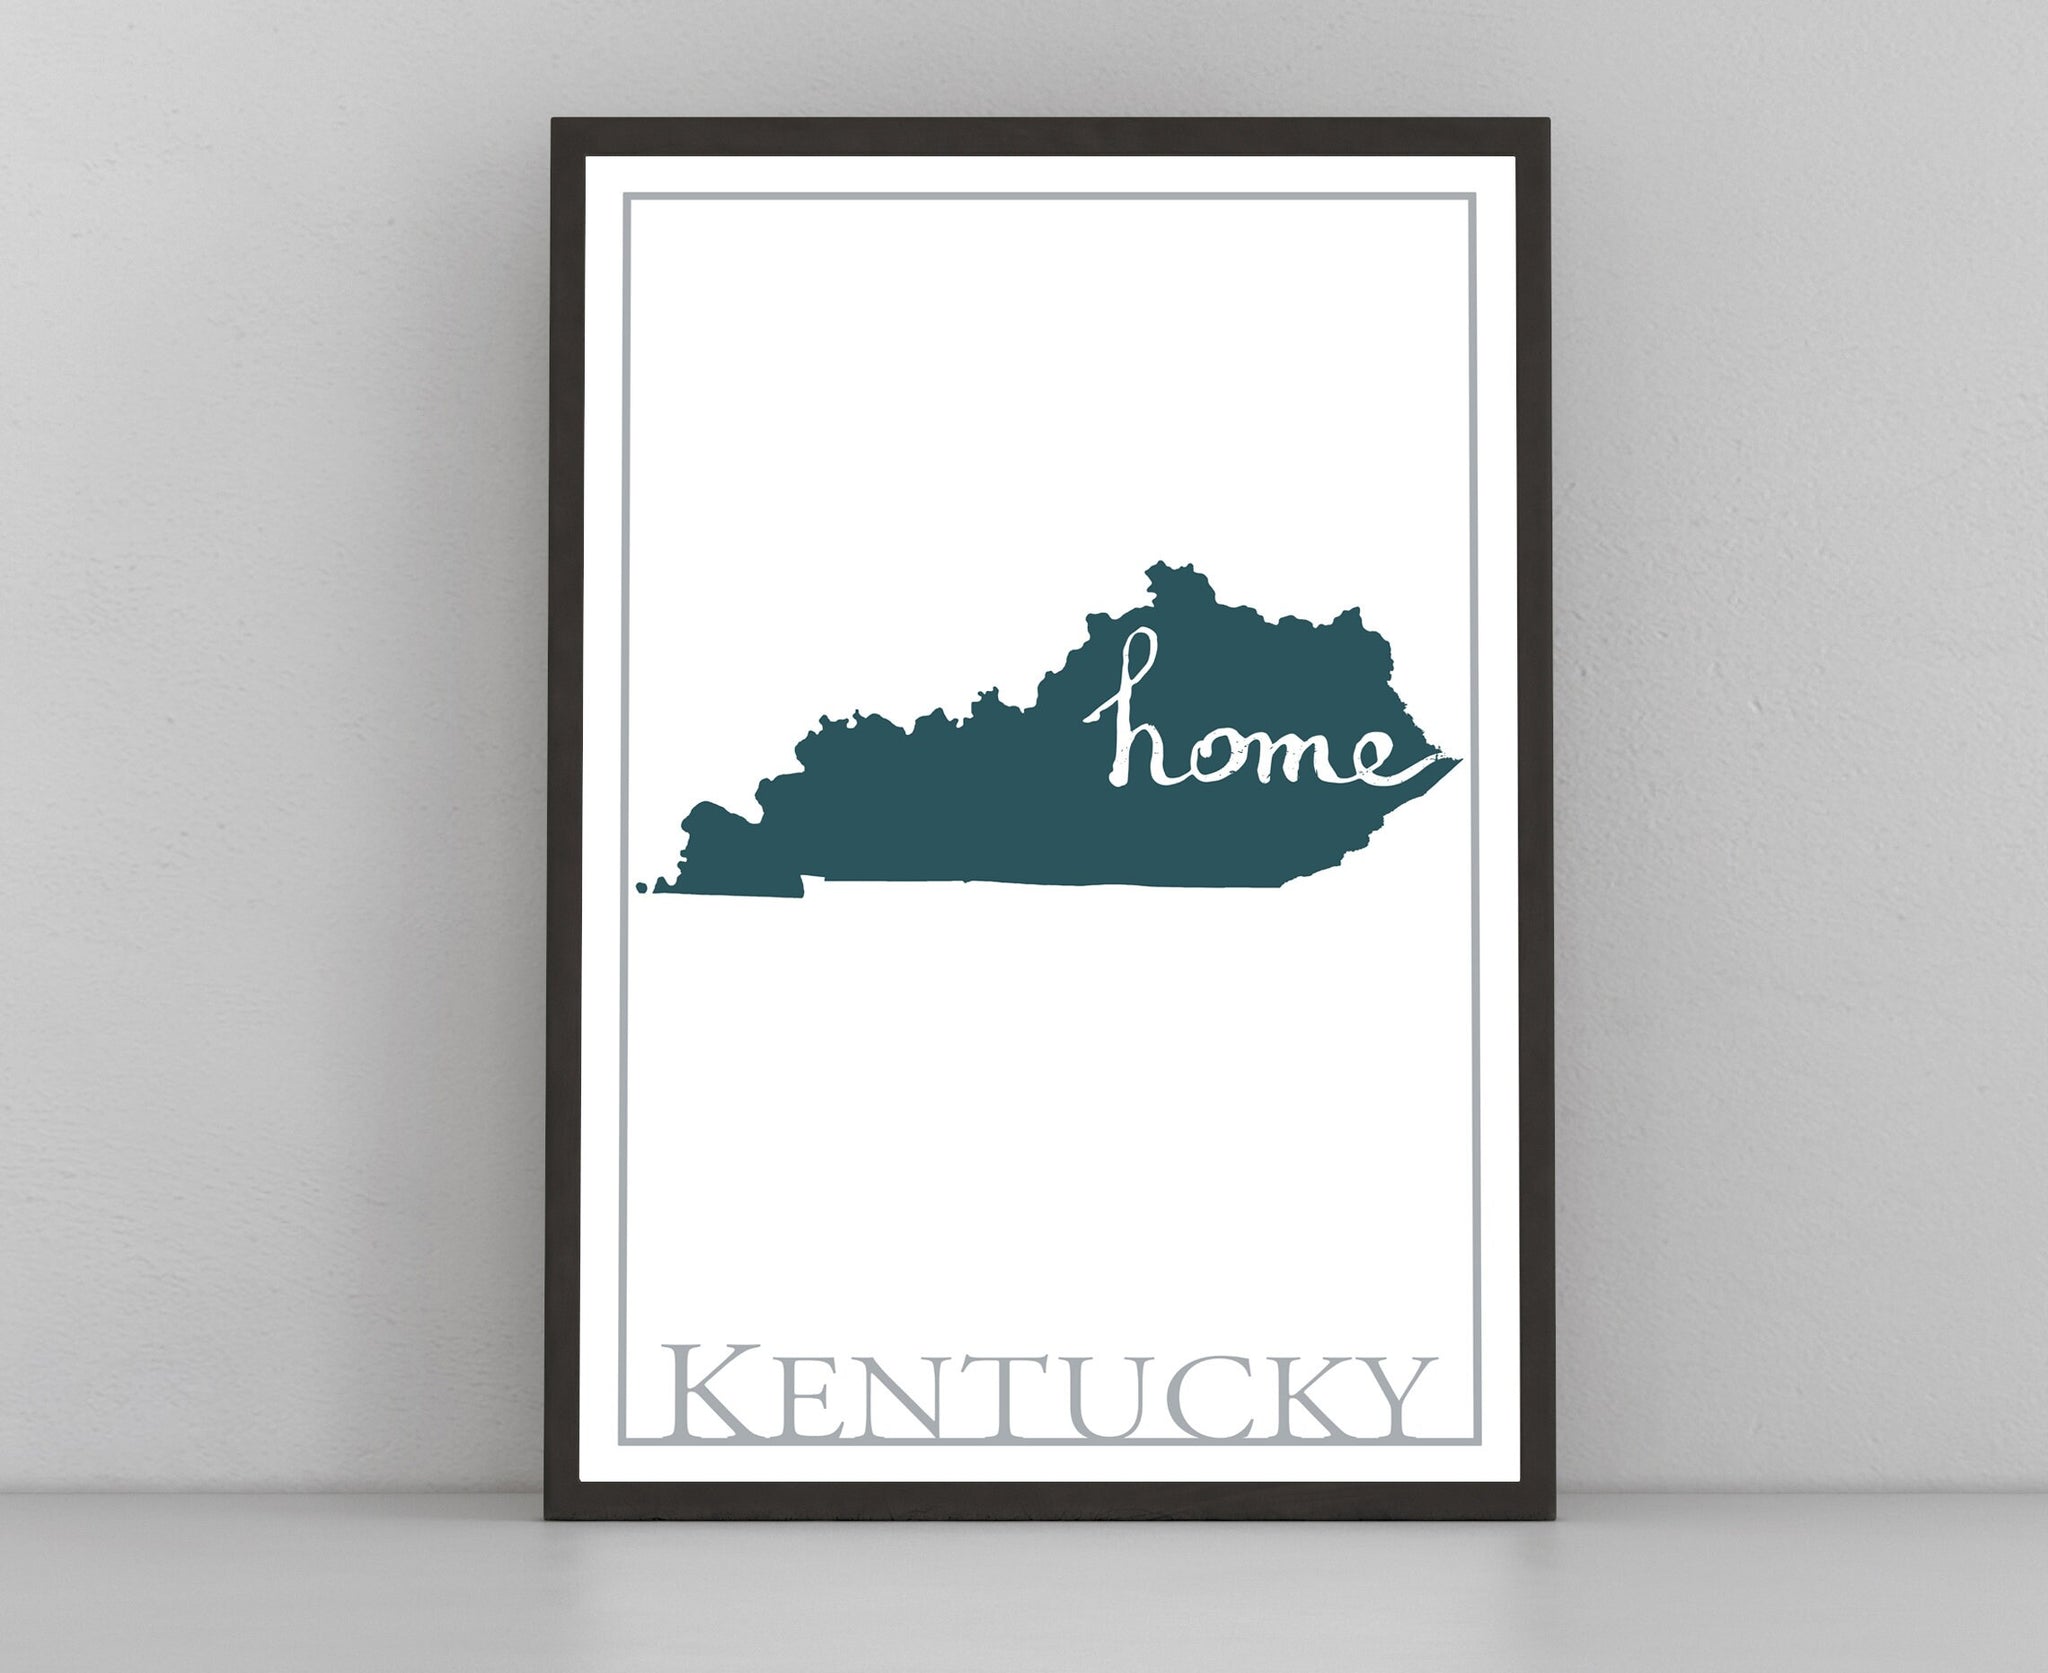 Kentucky Map Wall Art, Kentucky Modern Map Poster Print, Home Wall Decor, City Map, Kentucky City Poster Print, Kentucky State Poster, Gifts